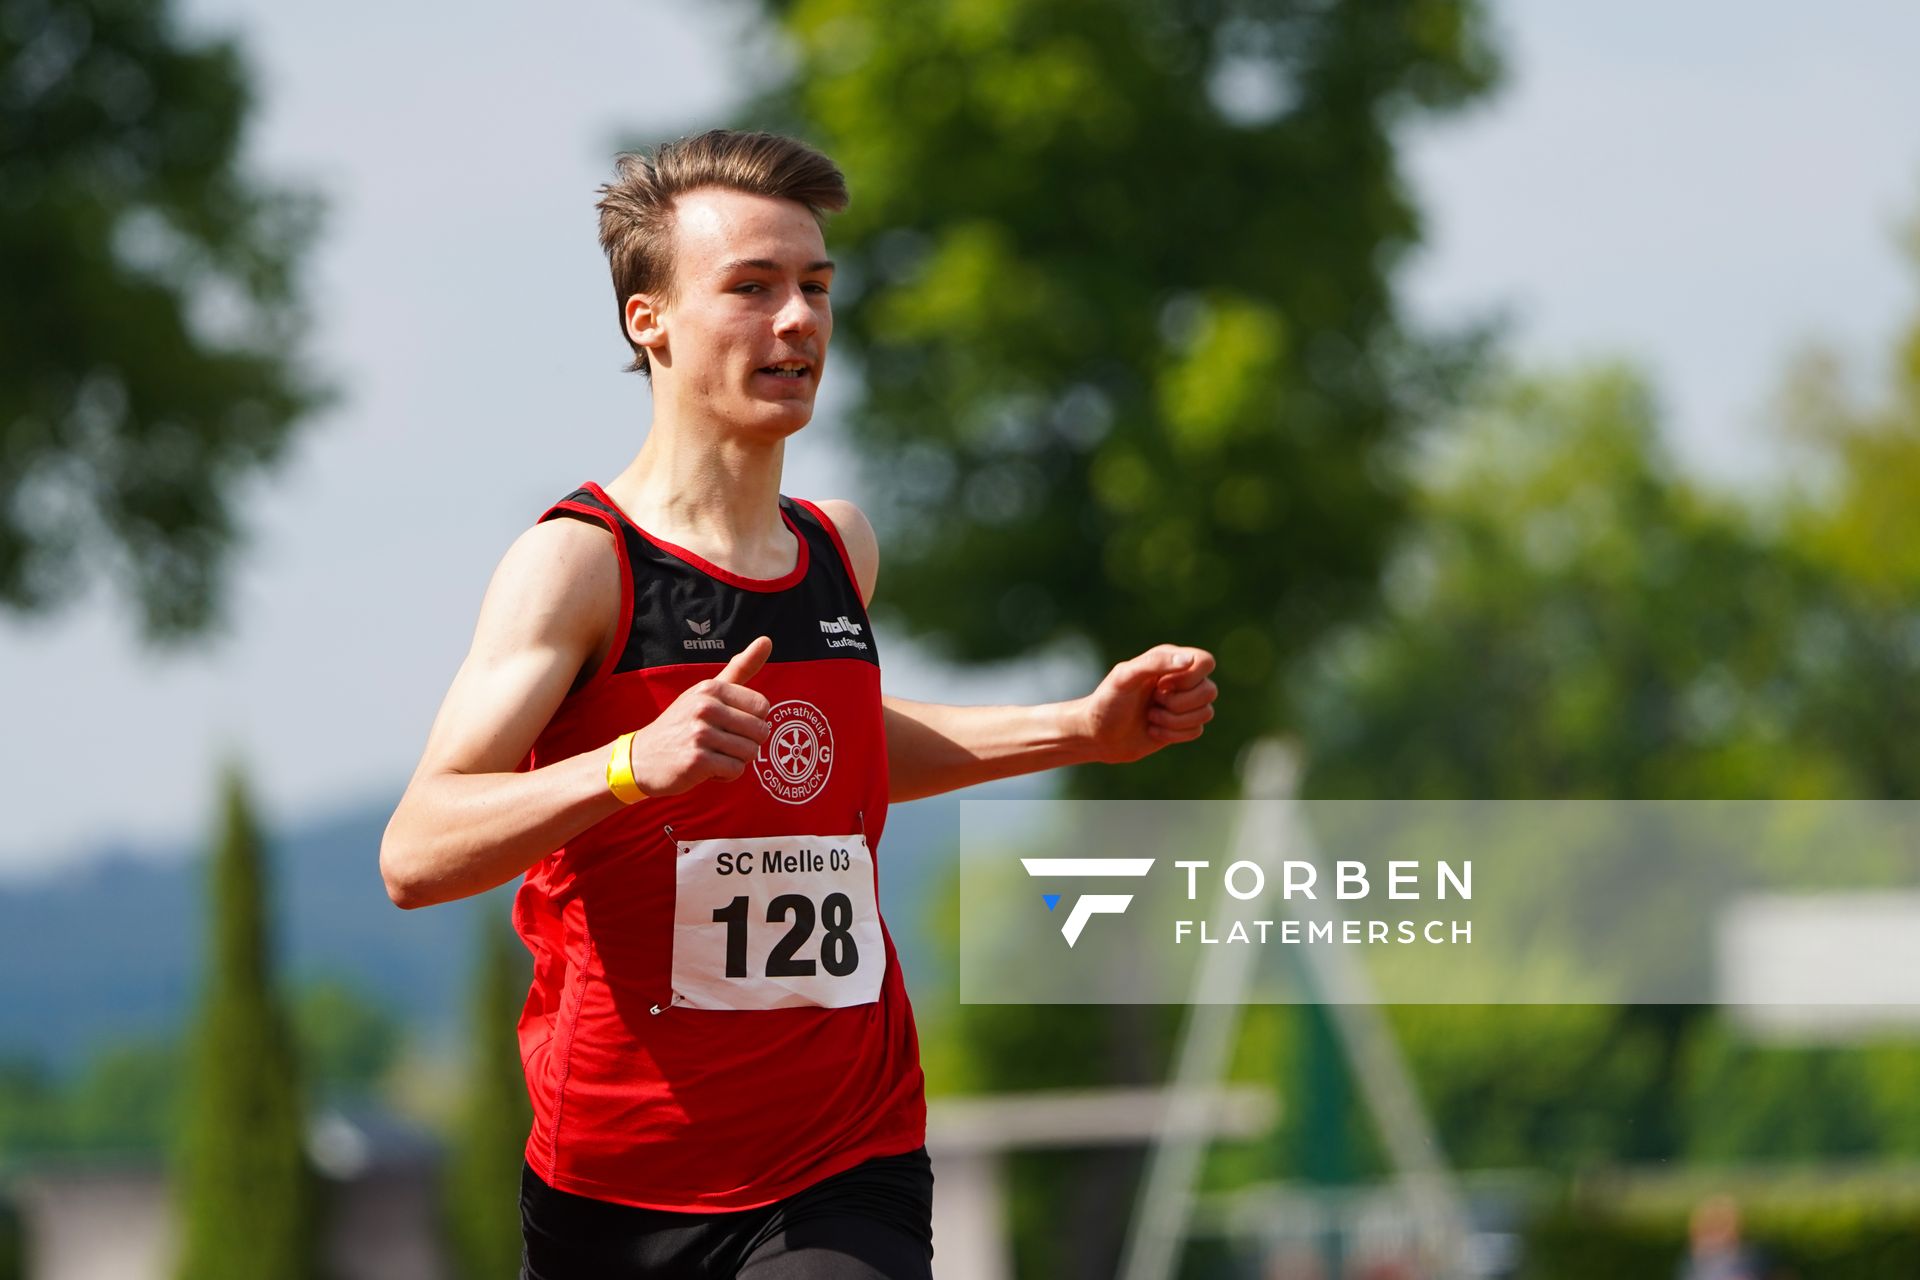 Florian Kroll (LG Osnabrueck) ueber 200m am 29.05.2021 waehrend des Frank Ruediger Sportfestes auf dem Carl-Starcke-Platz in Melle